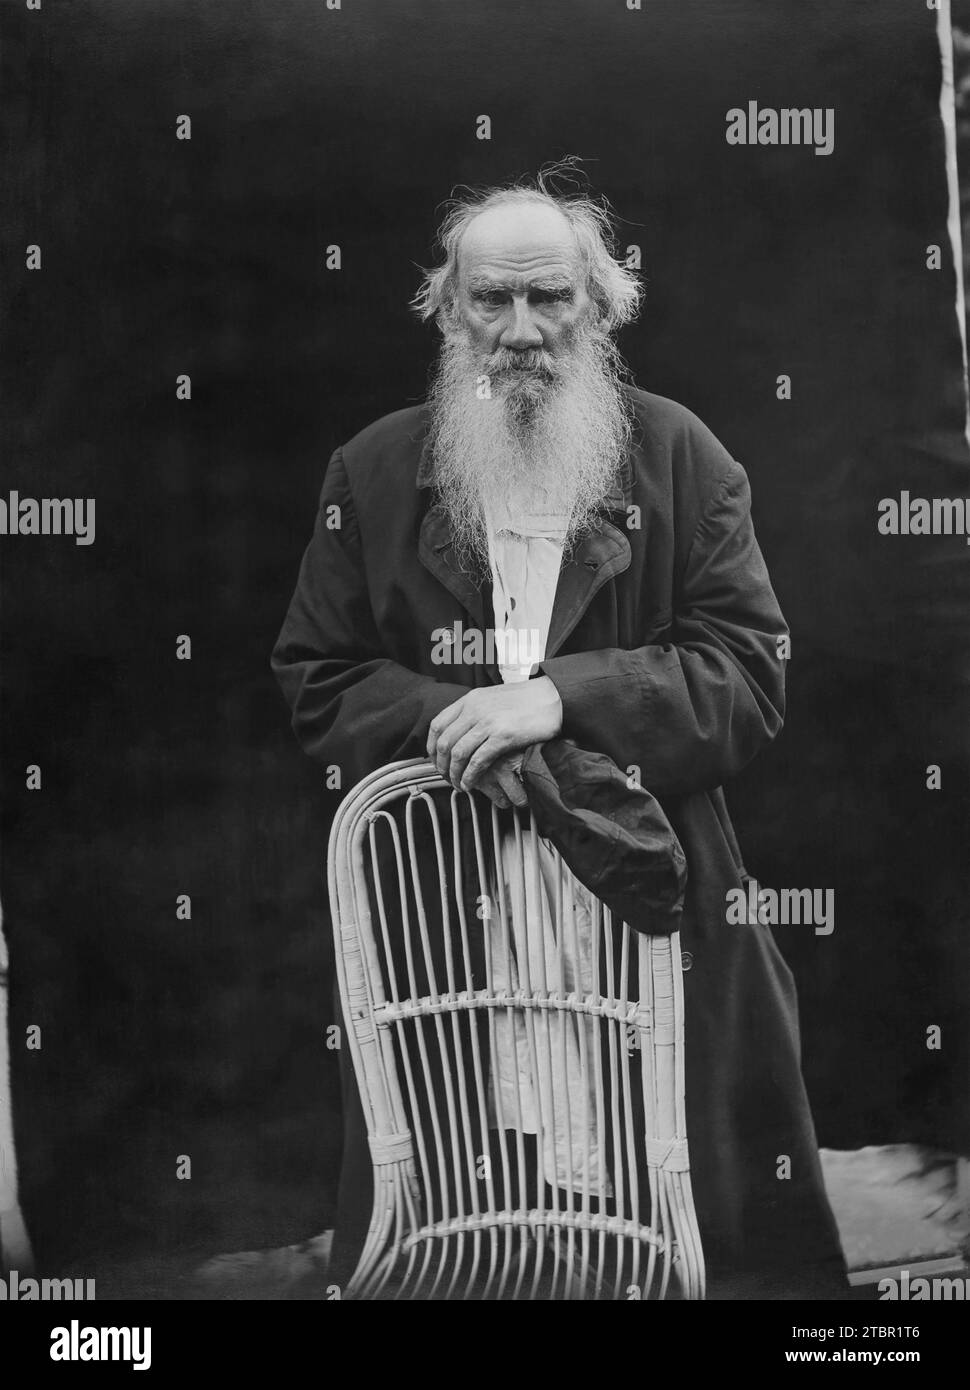 Ritratto di Tolstoj, con un cappotto nero su una blusa bianca. Si mette in piedi, appoggiando le mani piegate sul retro di una sedia di vimini, tenendo un berretto nero in saluto Foto Stock